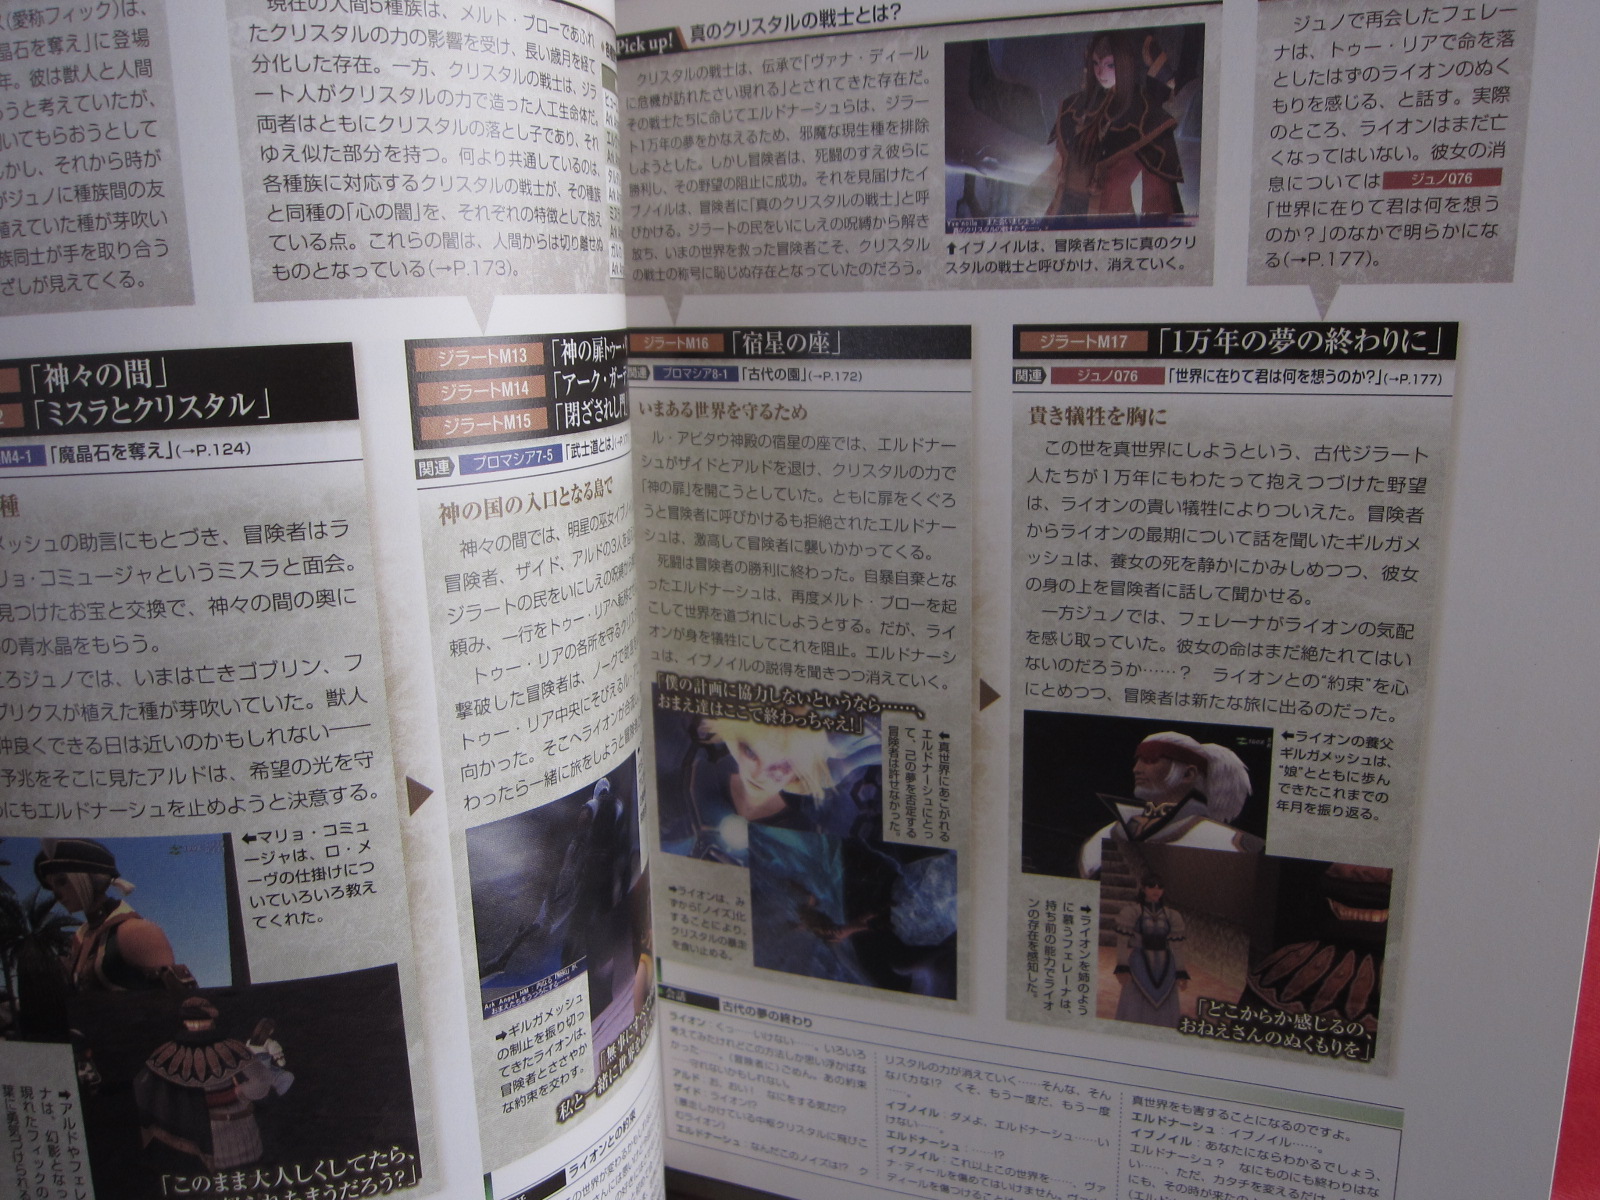 Guide Book JAPAN Final Fantasy XI Story Ultimania Ver.090409